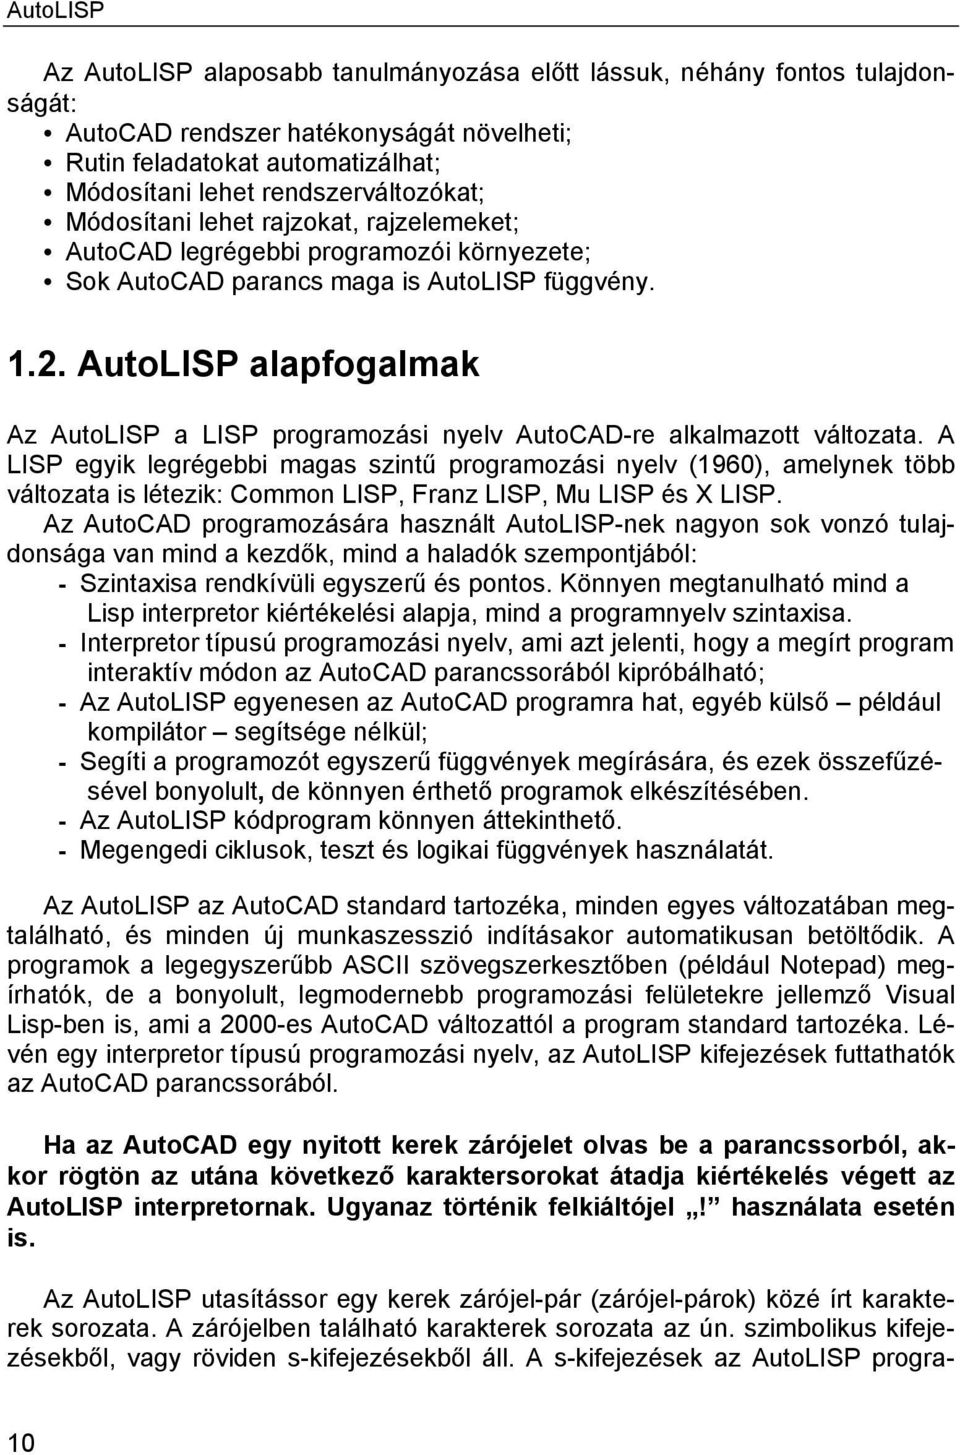 AutoLISP alapfogalmak Az AutoLISP a LISP programozási nyelv AutoCAD-re alkalmazott változata.